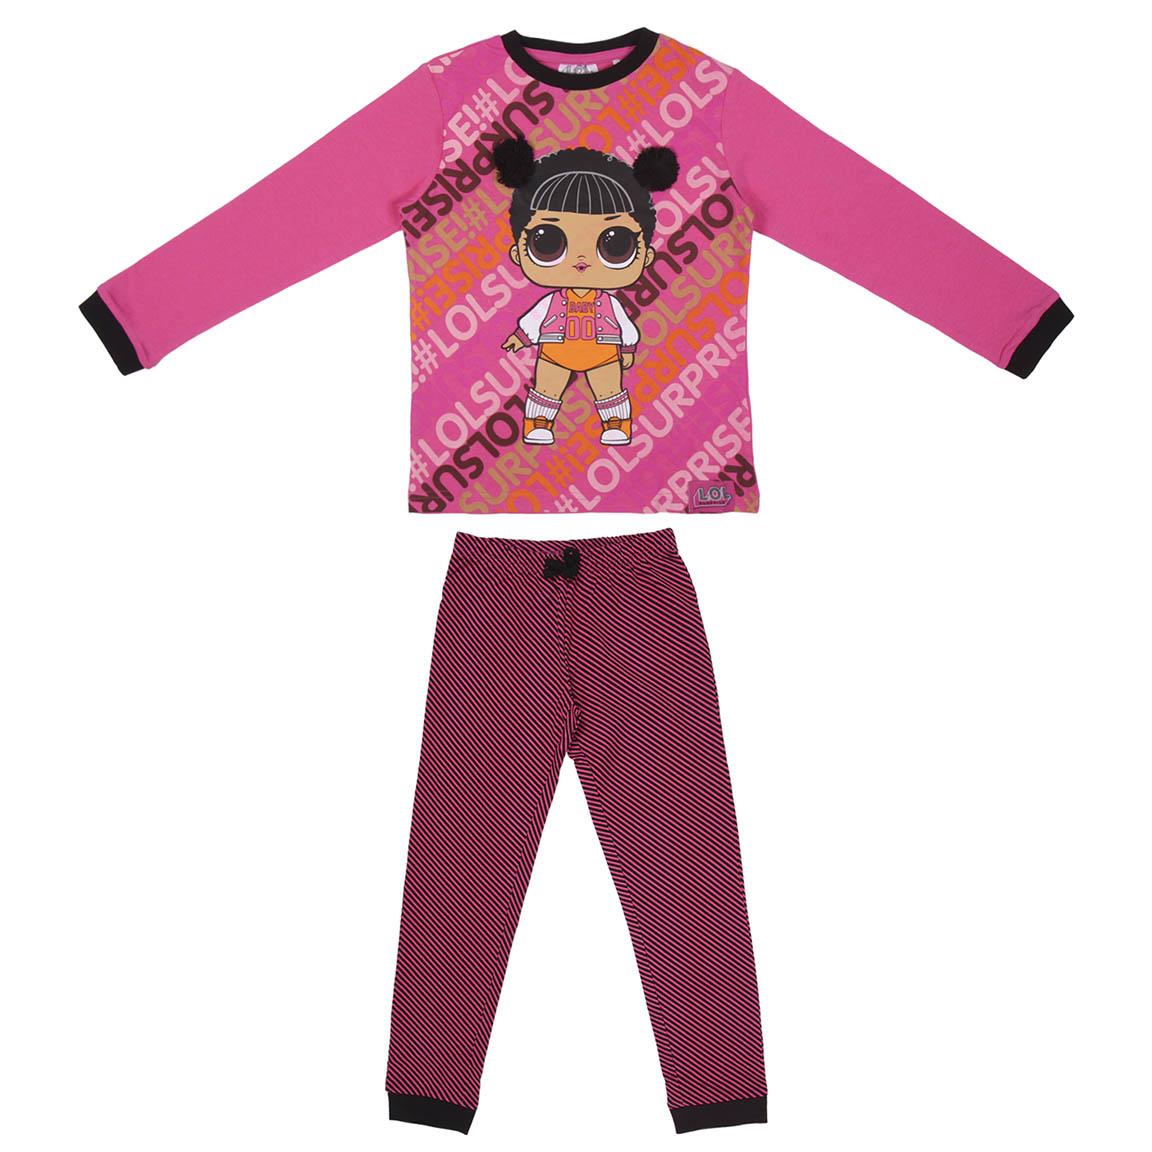   Pijama niña lol 2200006347 